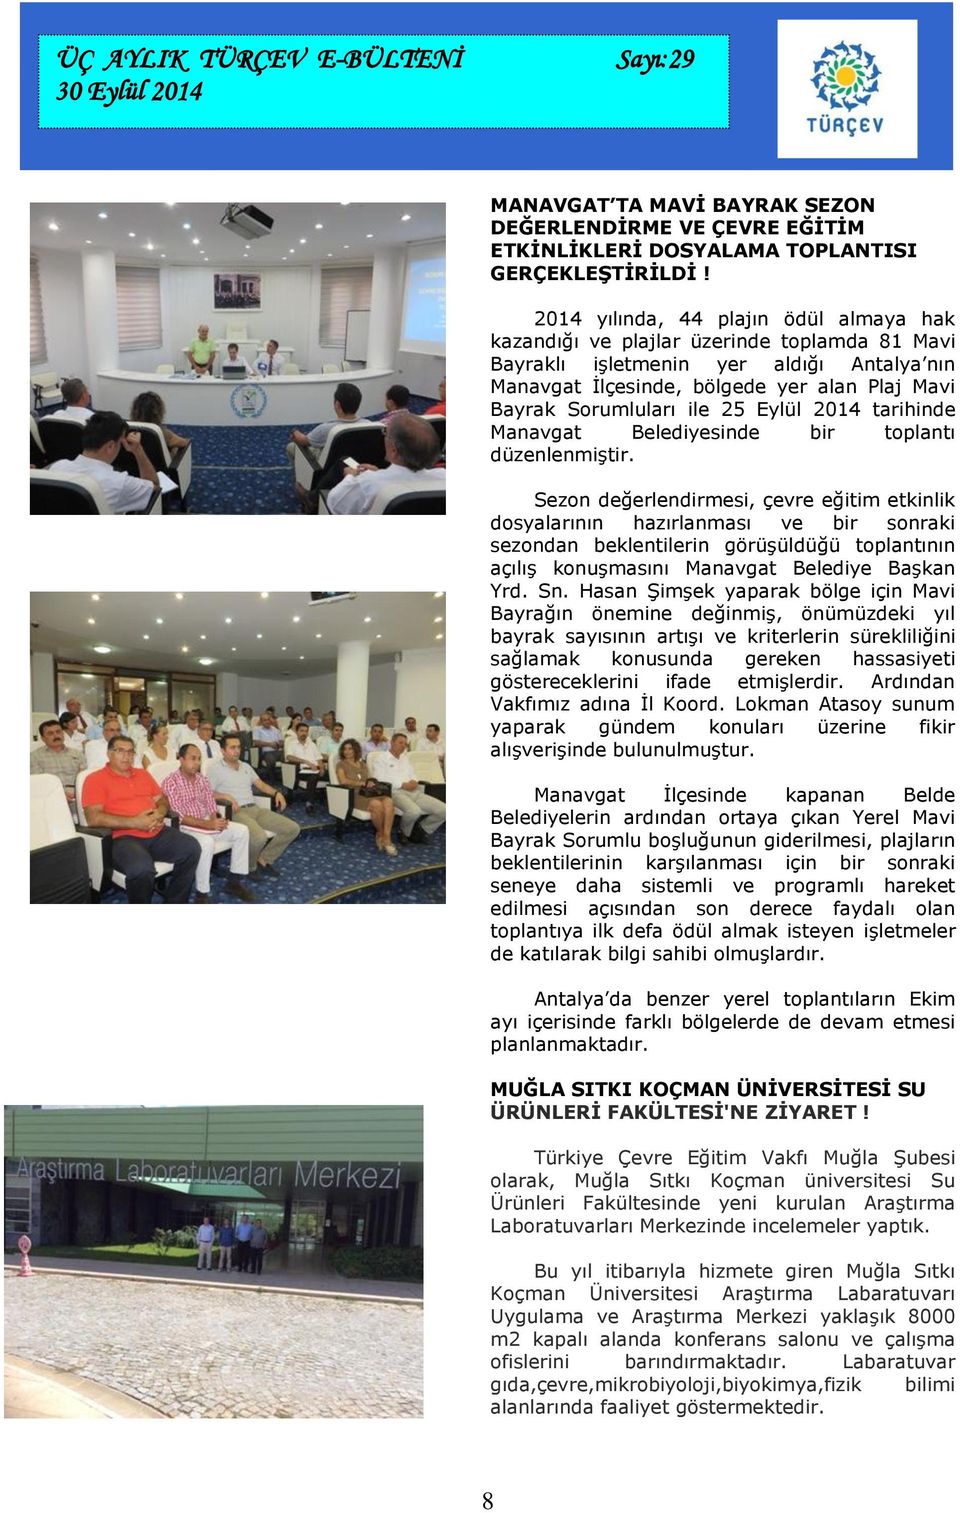 25 Eylül 2014 tarihinde Manavgat Belediyesinde bir toplantı düzenlenmiştir.